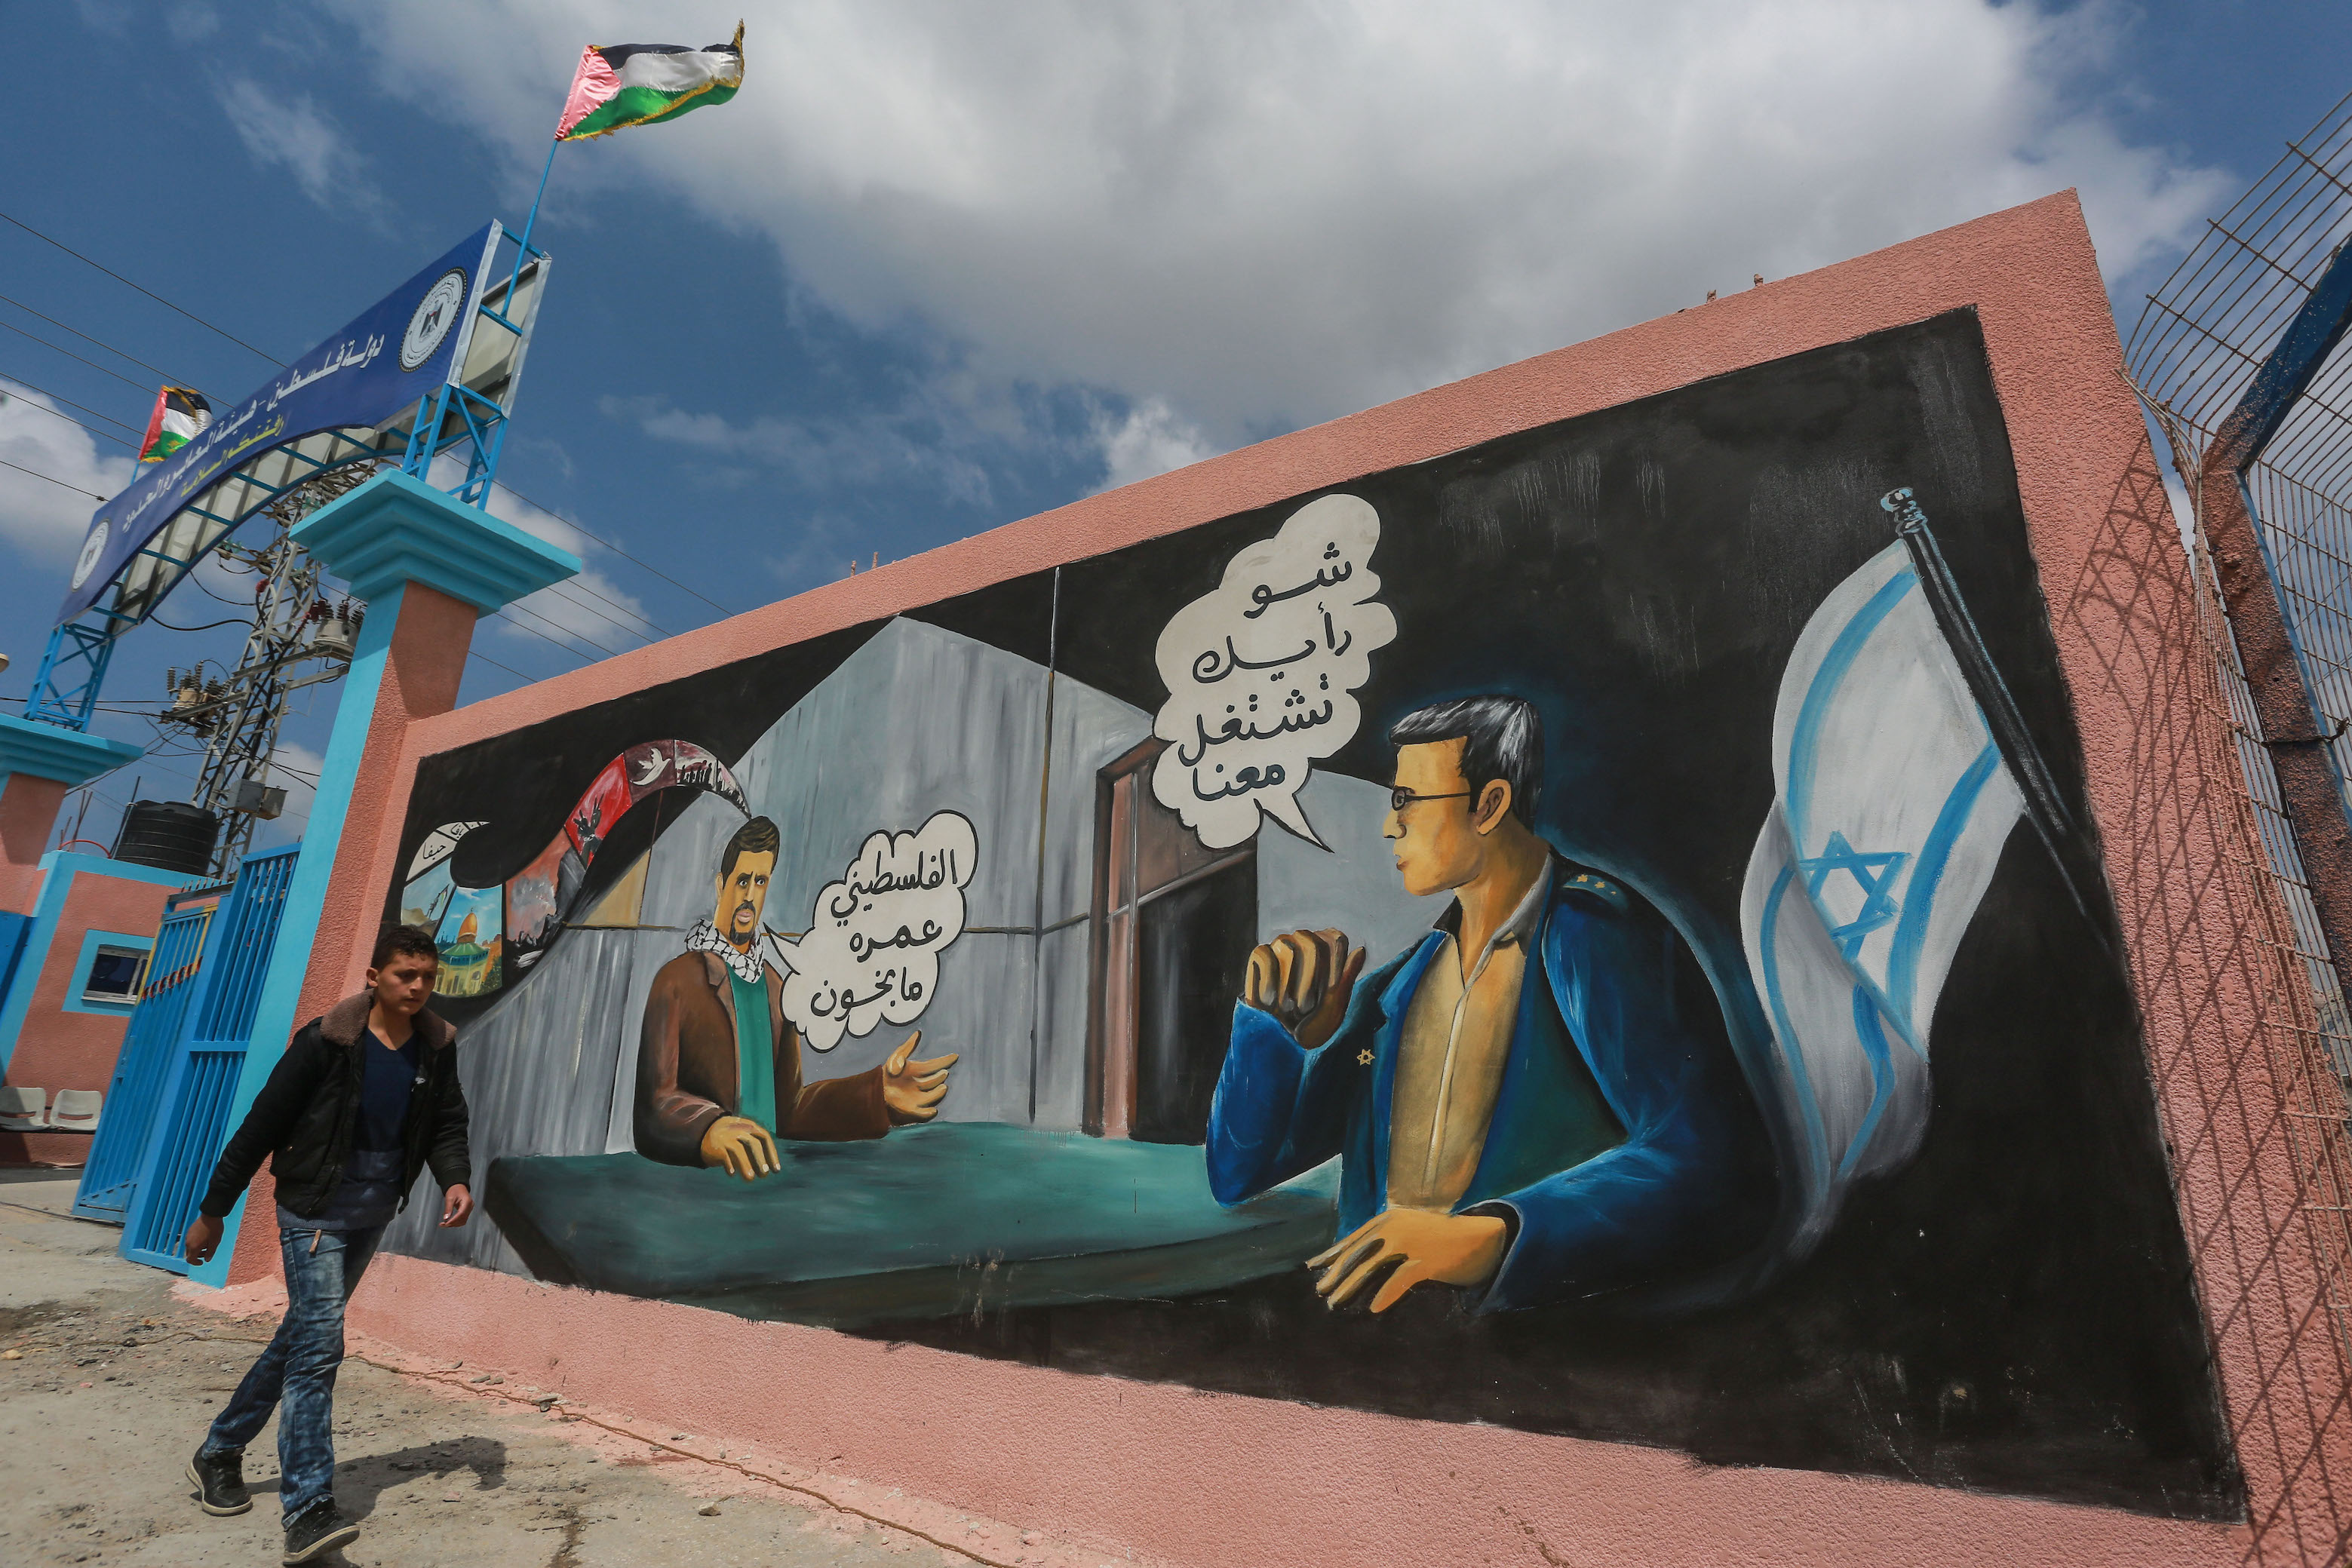 Une fresque près du poste-frontière de Beit Hanoun entre Gaza et Israël demande « Que pensez-vous de travailler pour Israël ? » suivi de la réponse « Le Palestinien n’est pas un traître » (MEE/Mohammed al-Hajjar)